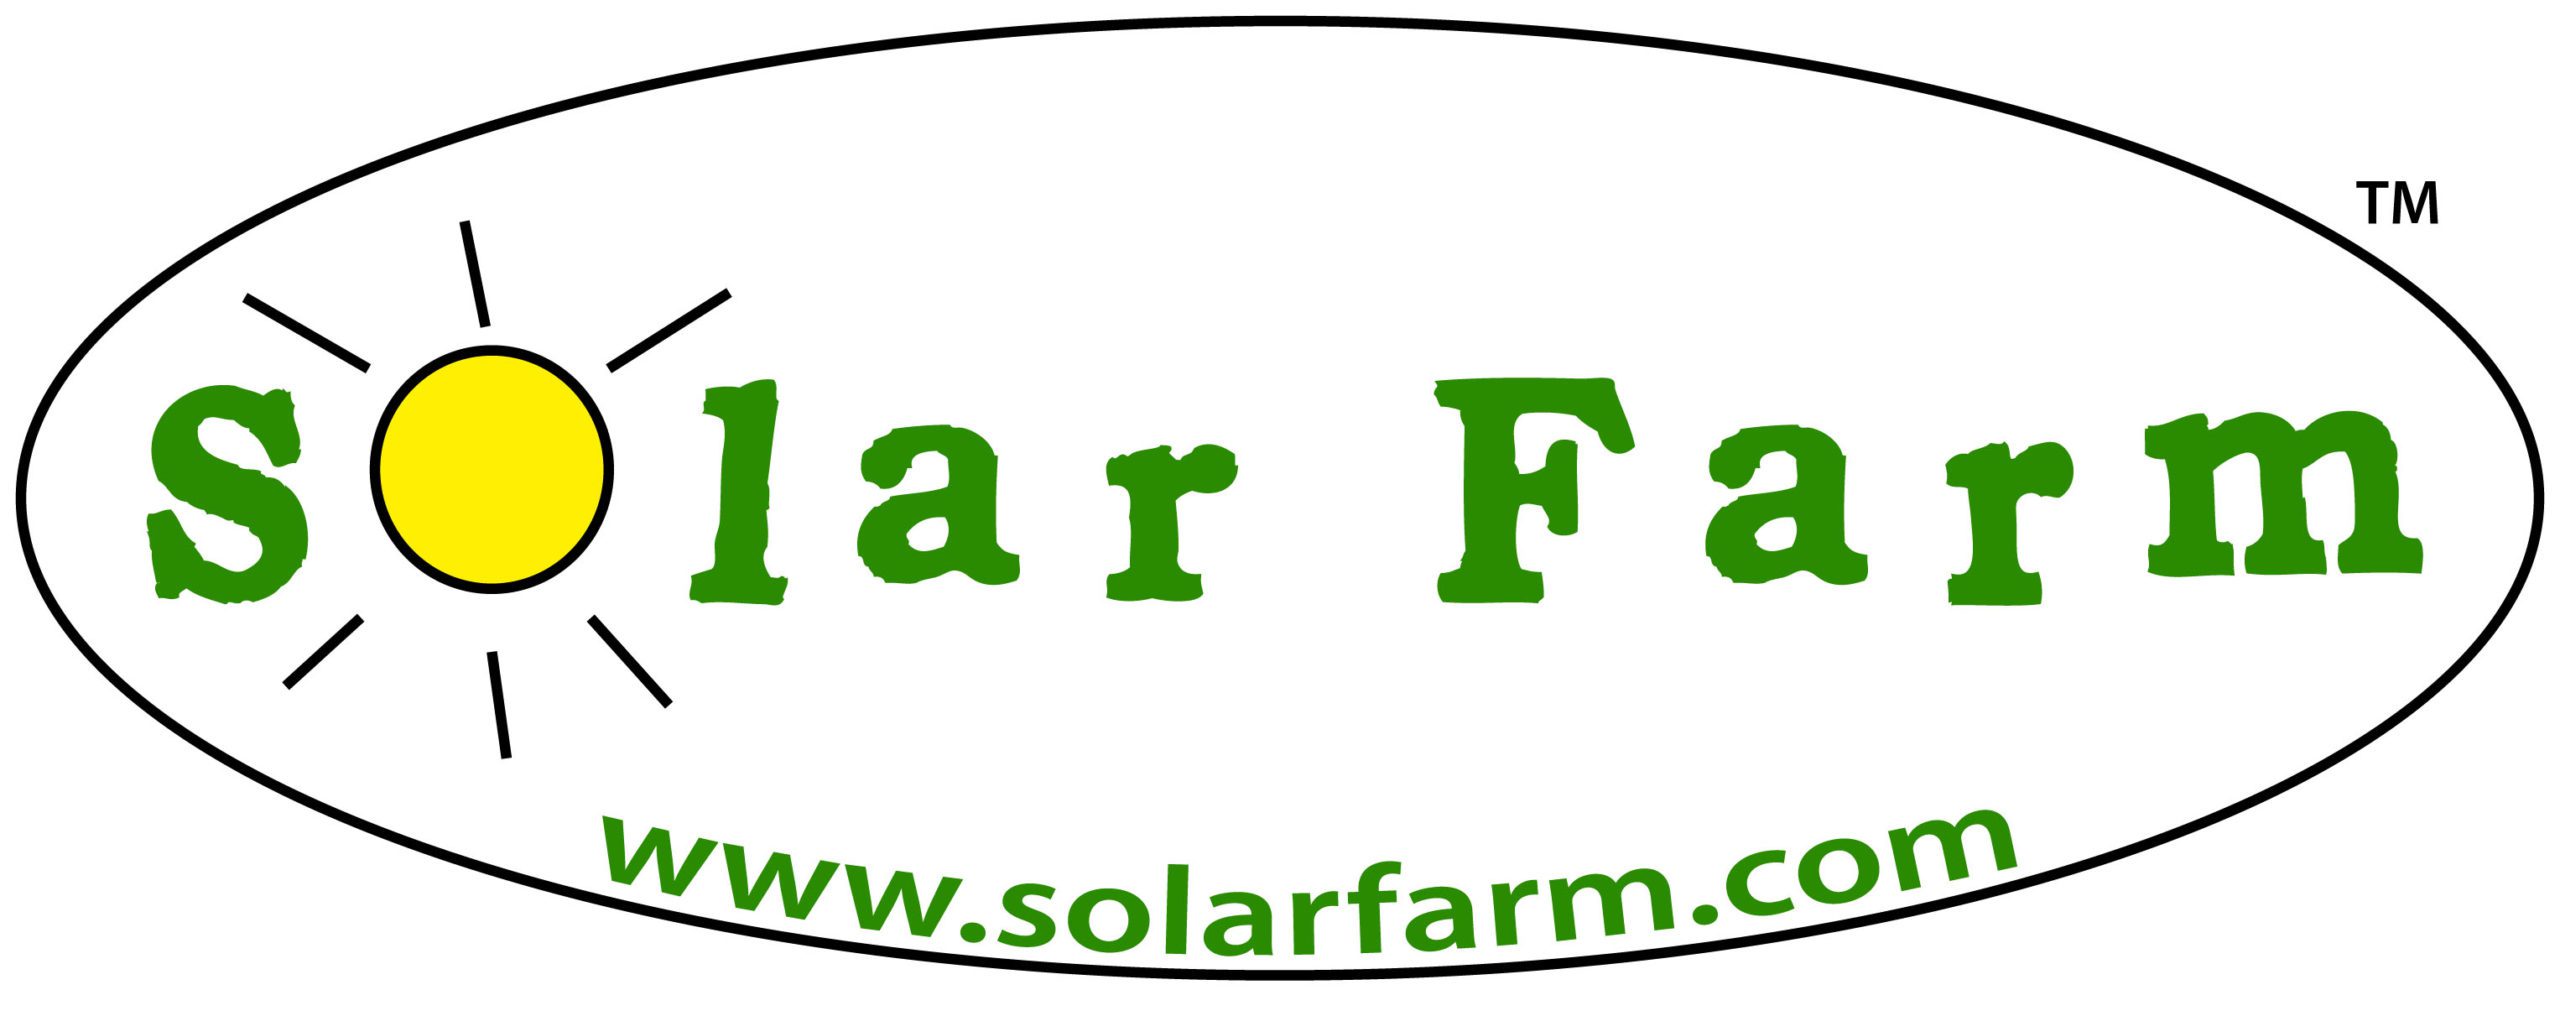 solar farm logo for web forrest green